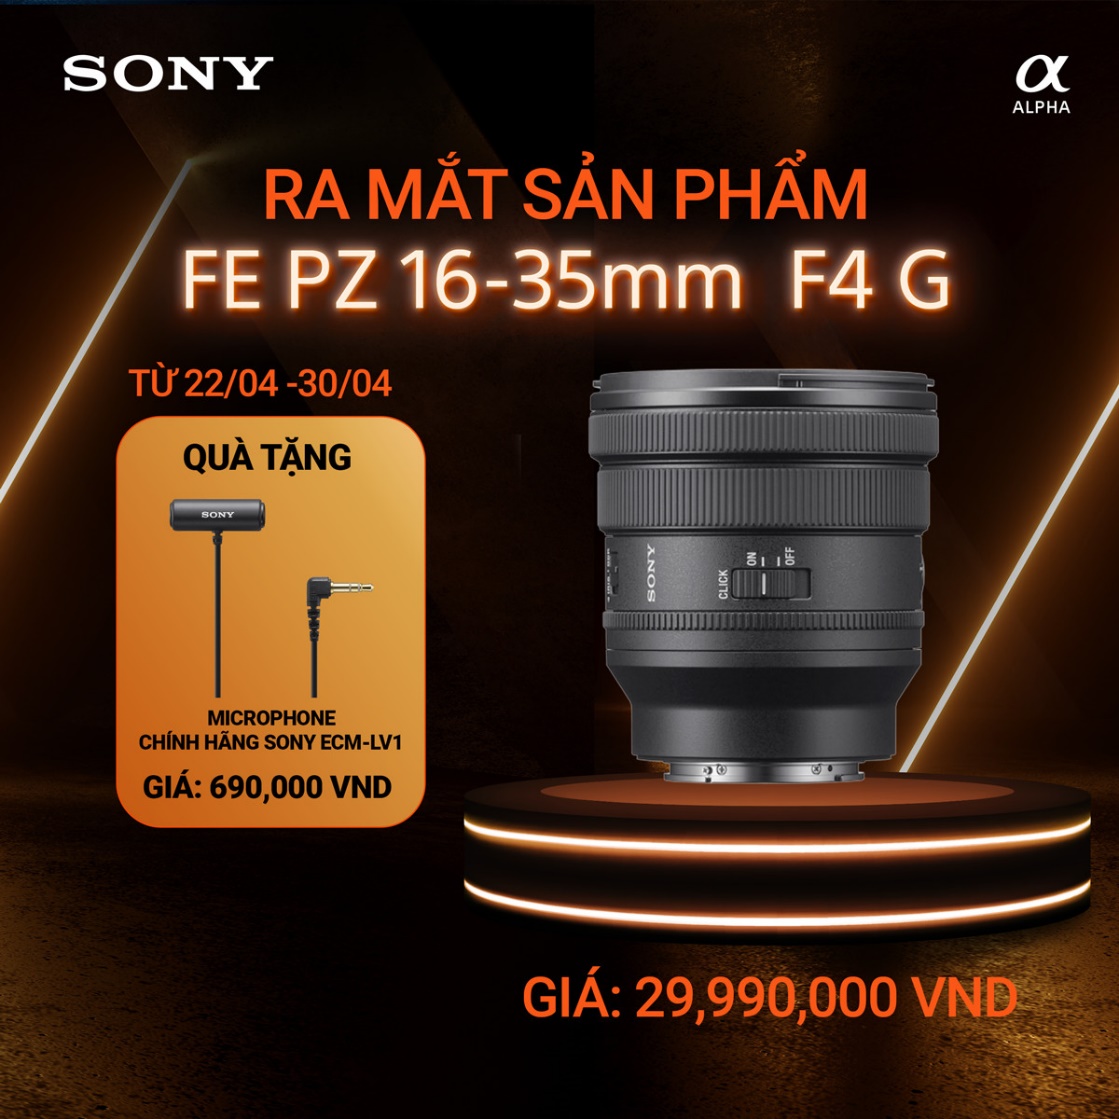 Sony ra mắt FE PZ 16-35mm F4 G - ống kính zoom điện góc rộng với khẩu độ cố định F4 gọn nhẹ bậc nhất thế giới - Ảnh 5.